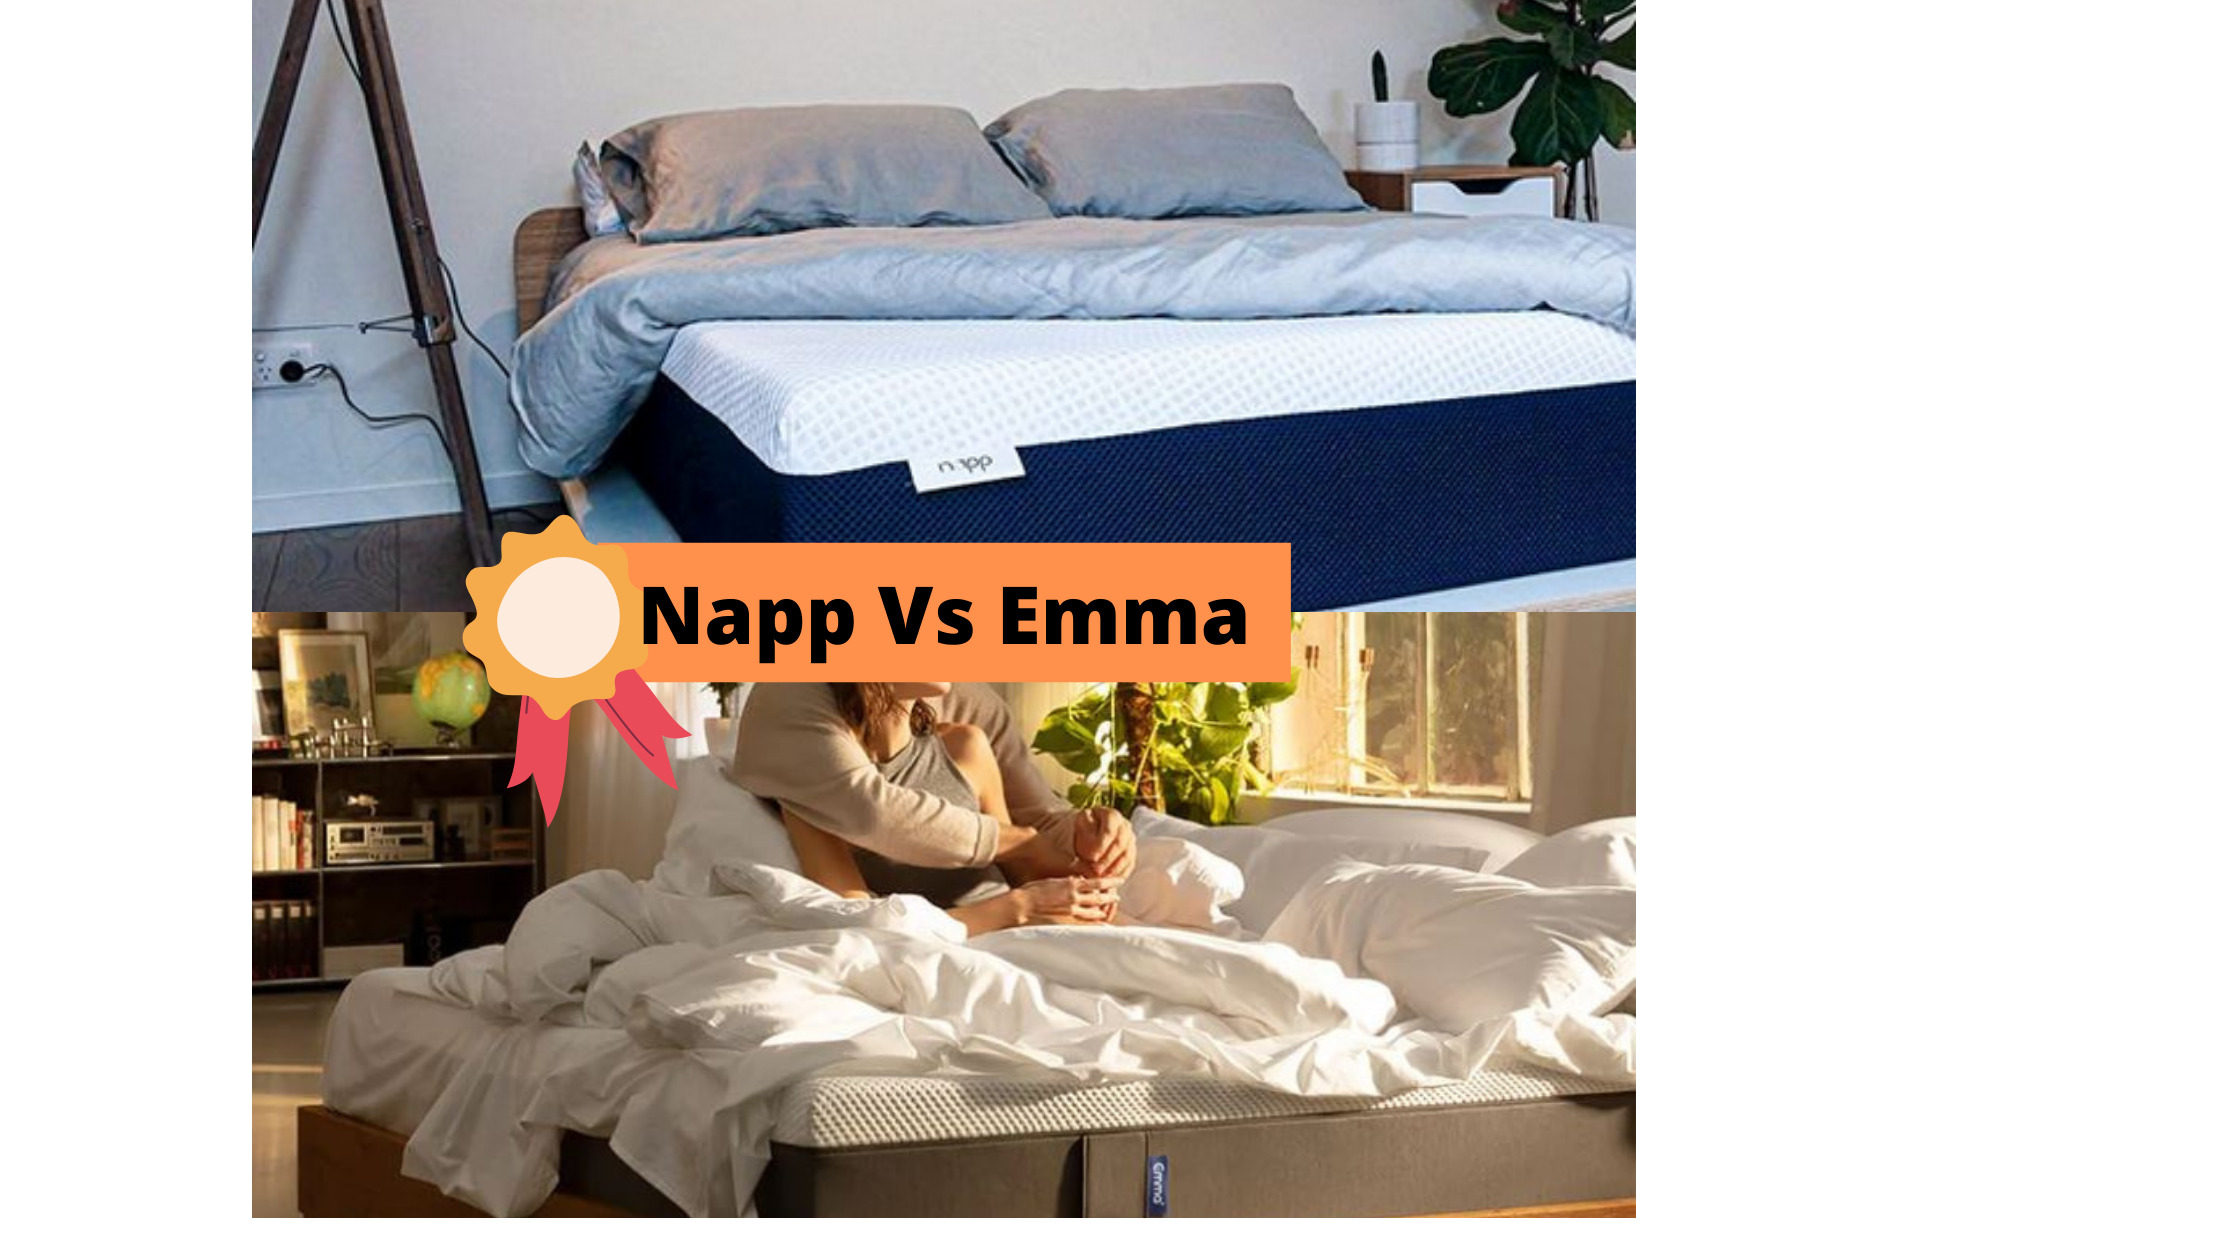 Napp Vs Emma - Mattress In A Box Comparison